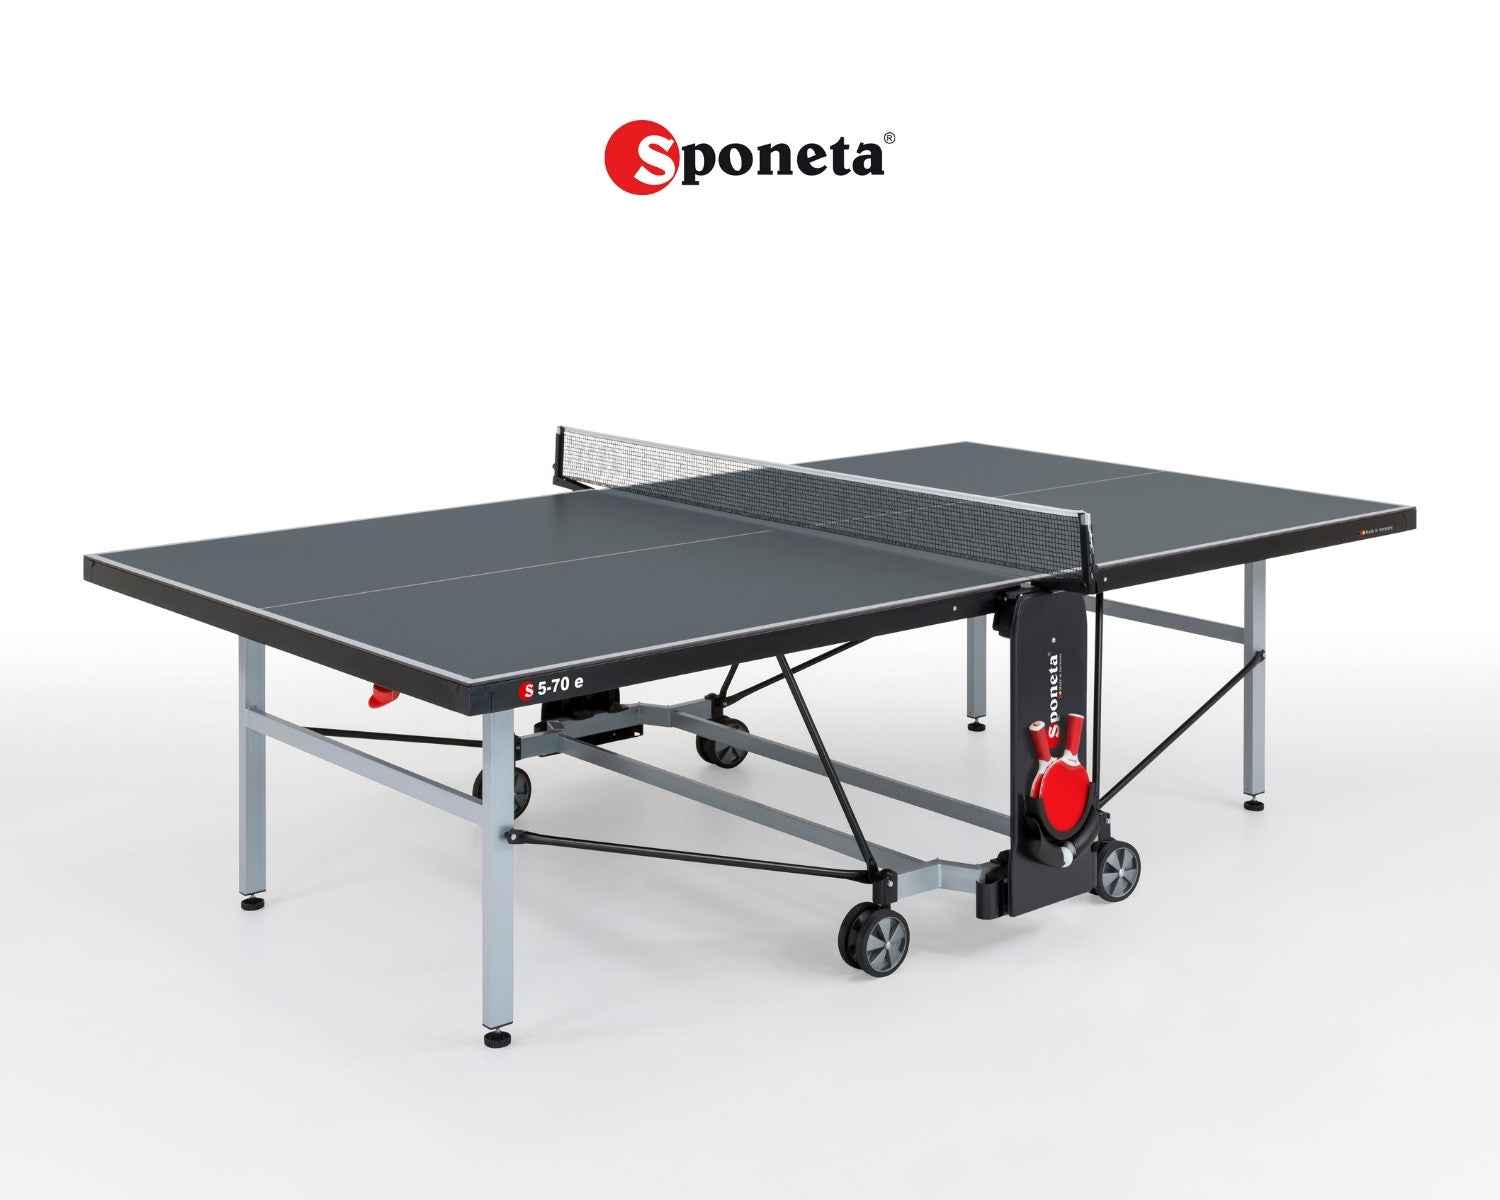 Sponeta Tavolo da Ping Pong Outdoor S 5-70 e